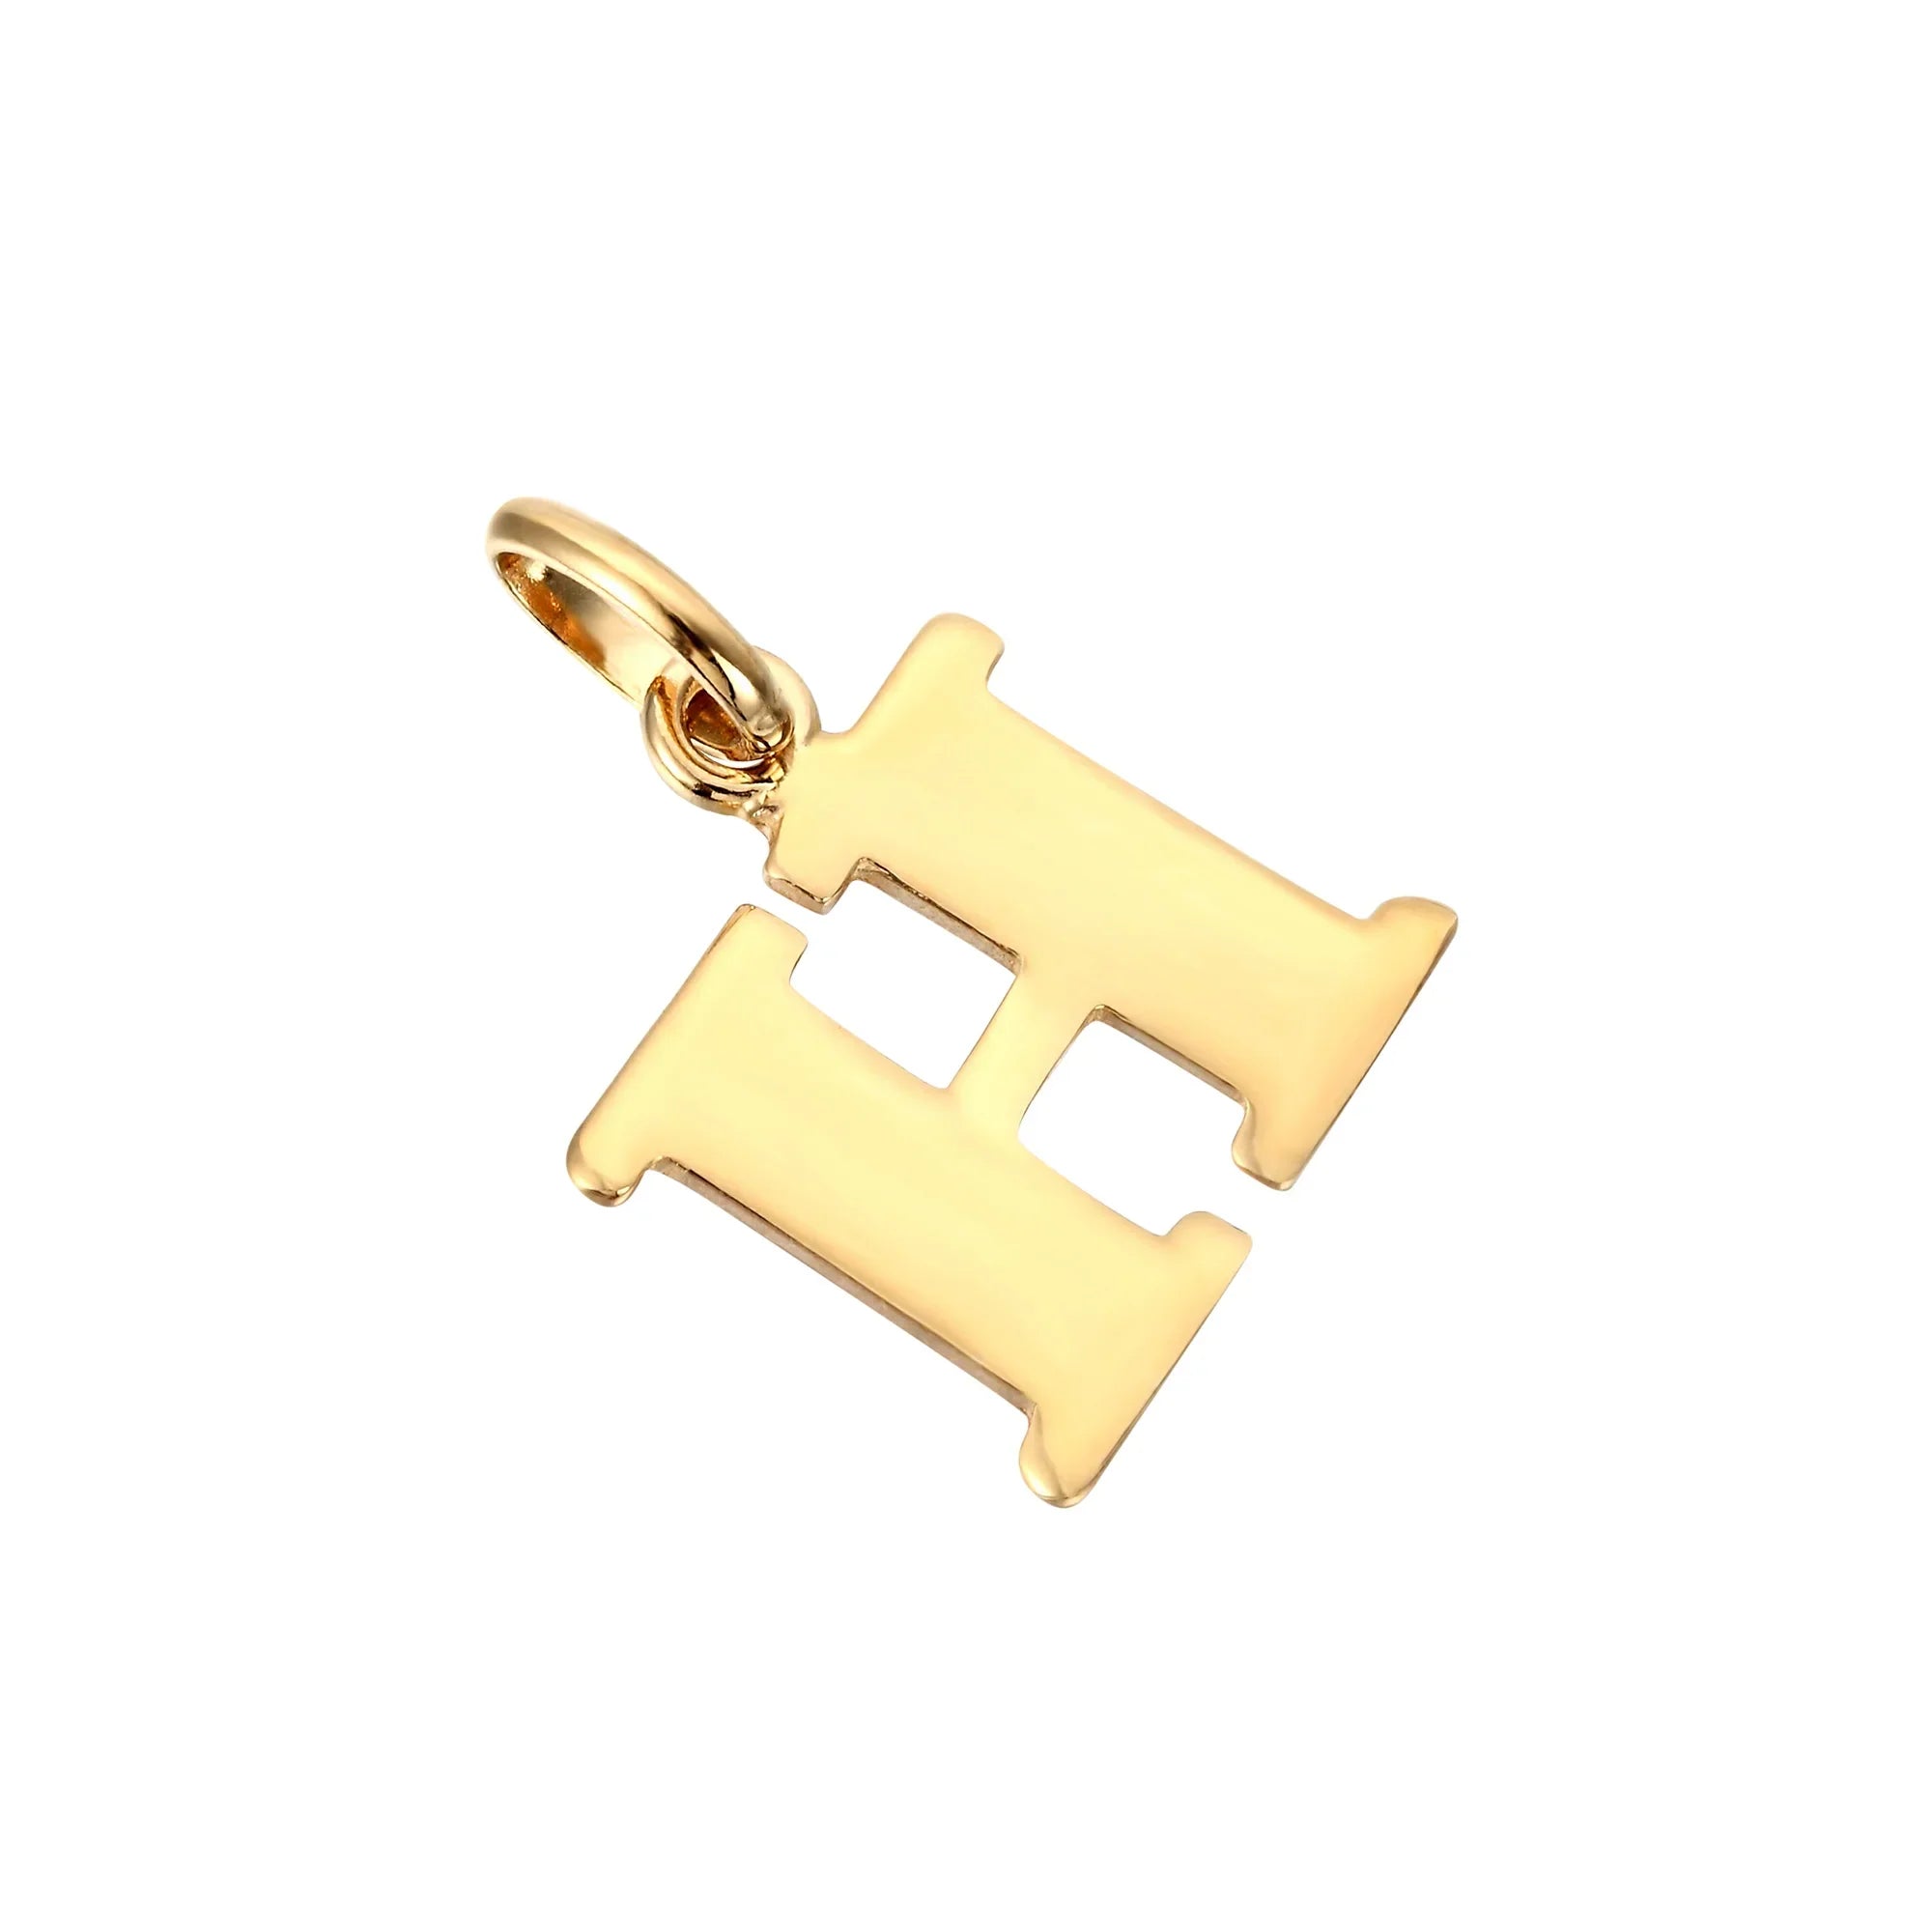 18ct Gold Vermeil Initial Letter Charm Pendant